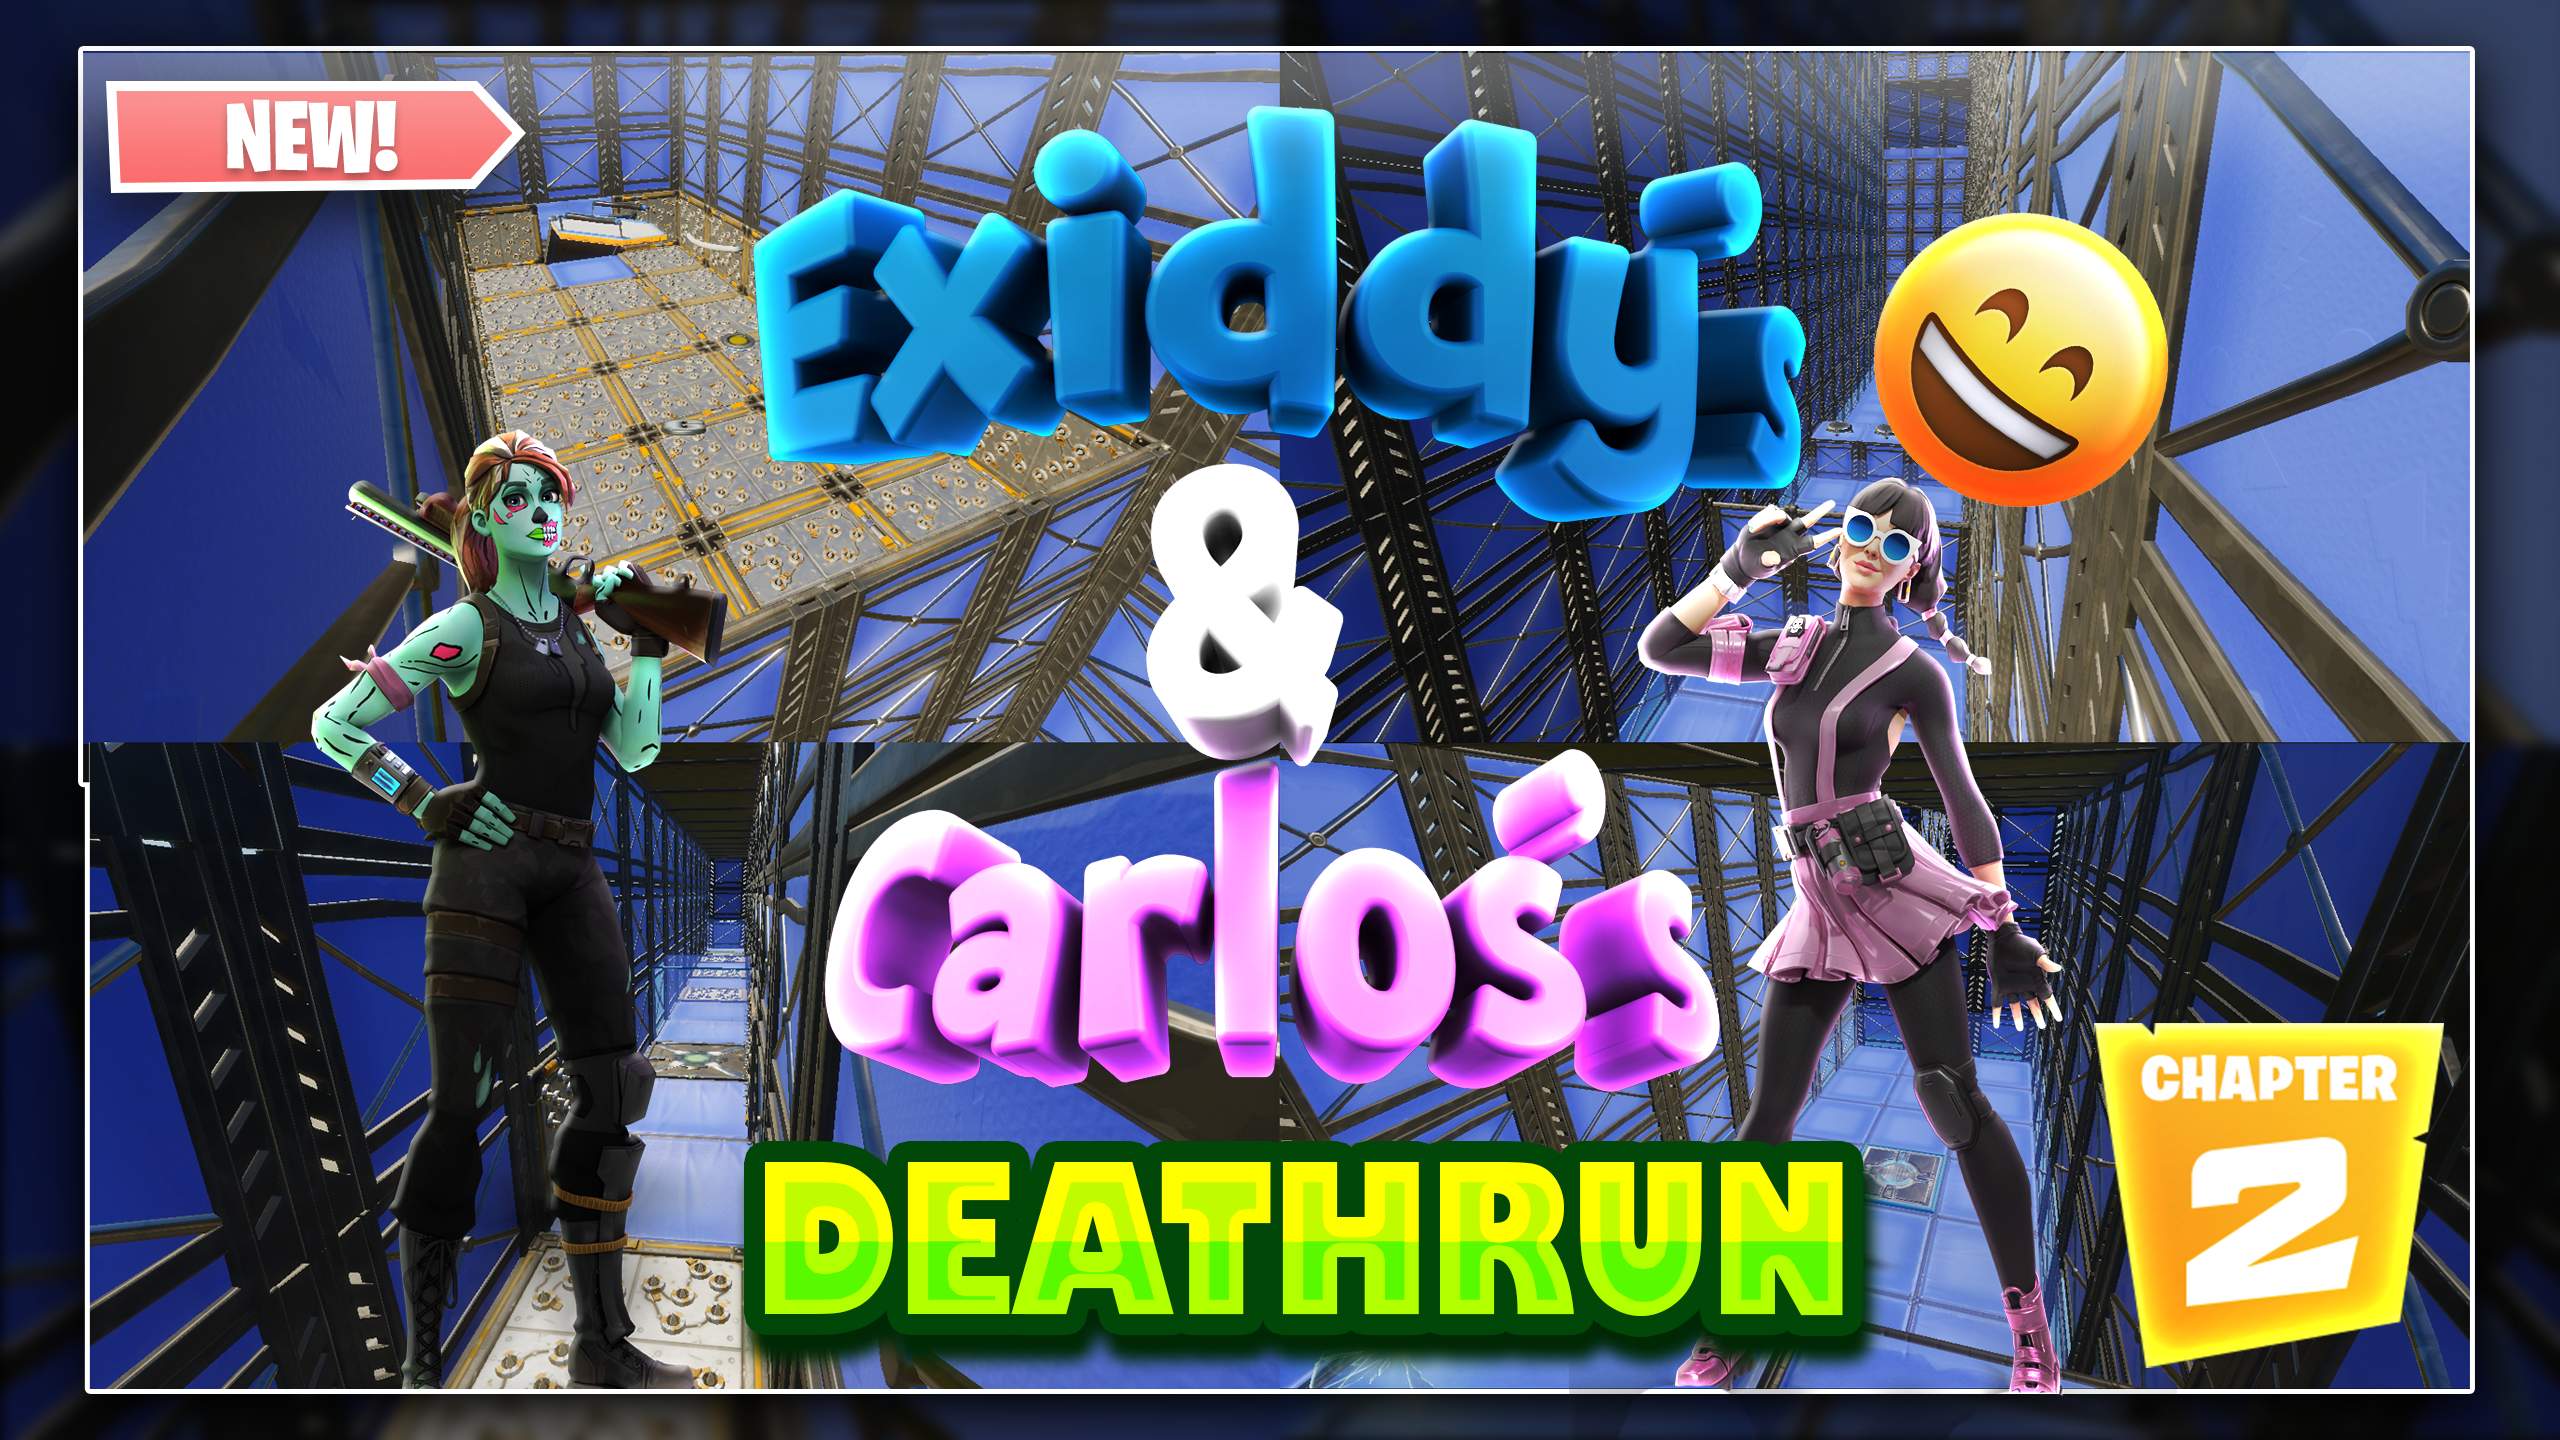 EXIDDY'S & CARLOS'S DEATHRUN!